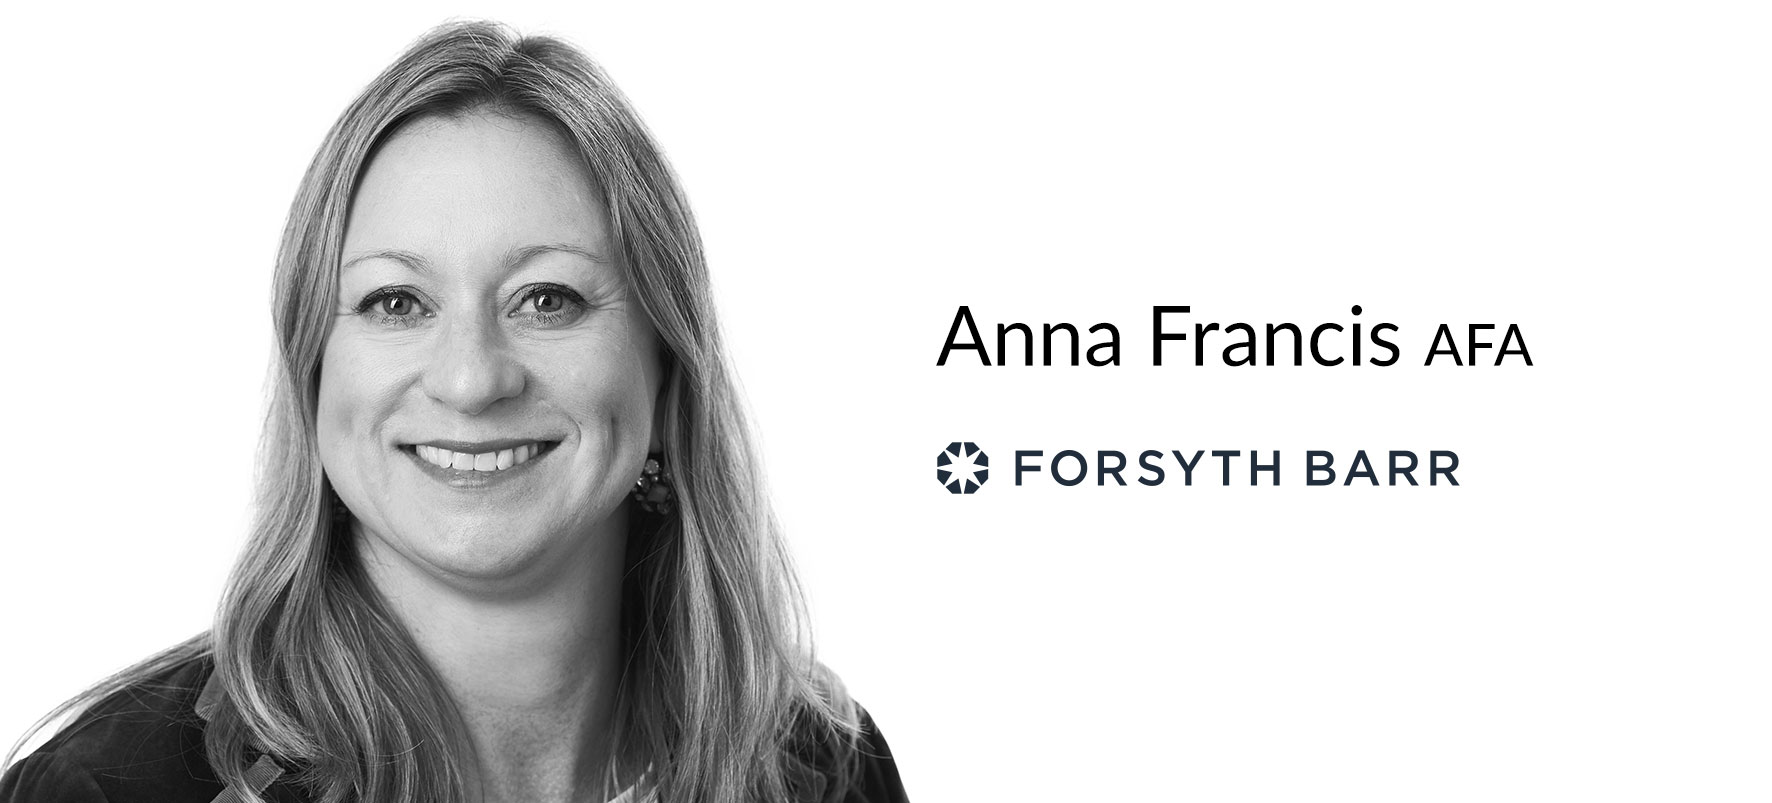 Forsyth Barr introduces Anna Francis